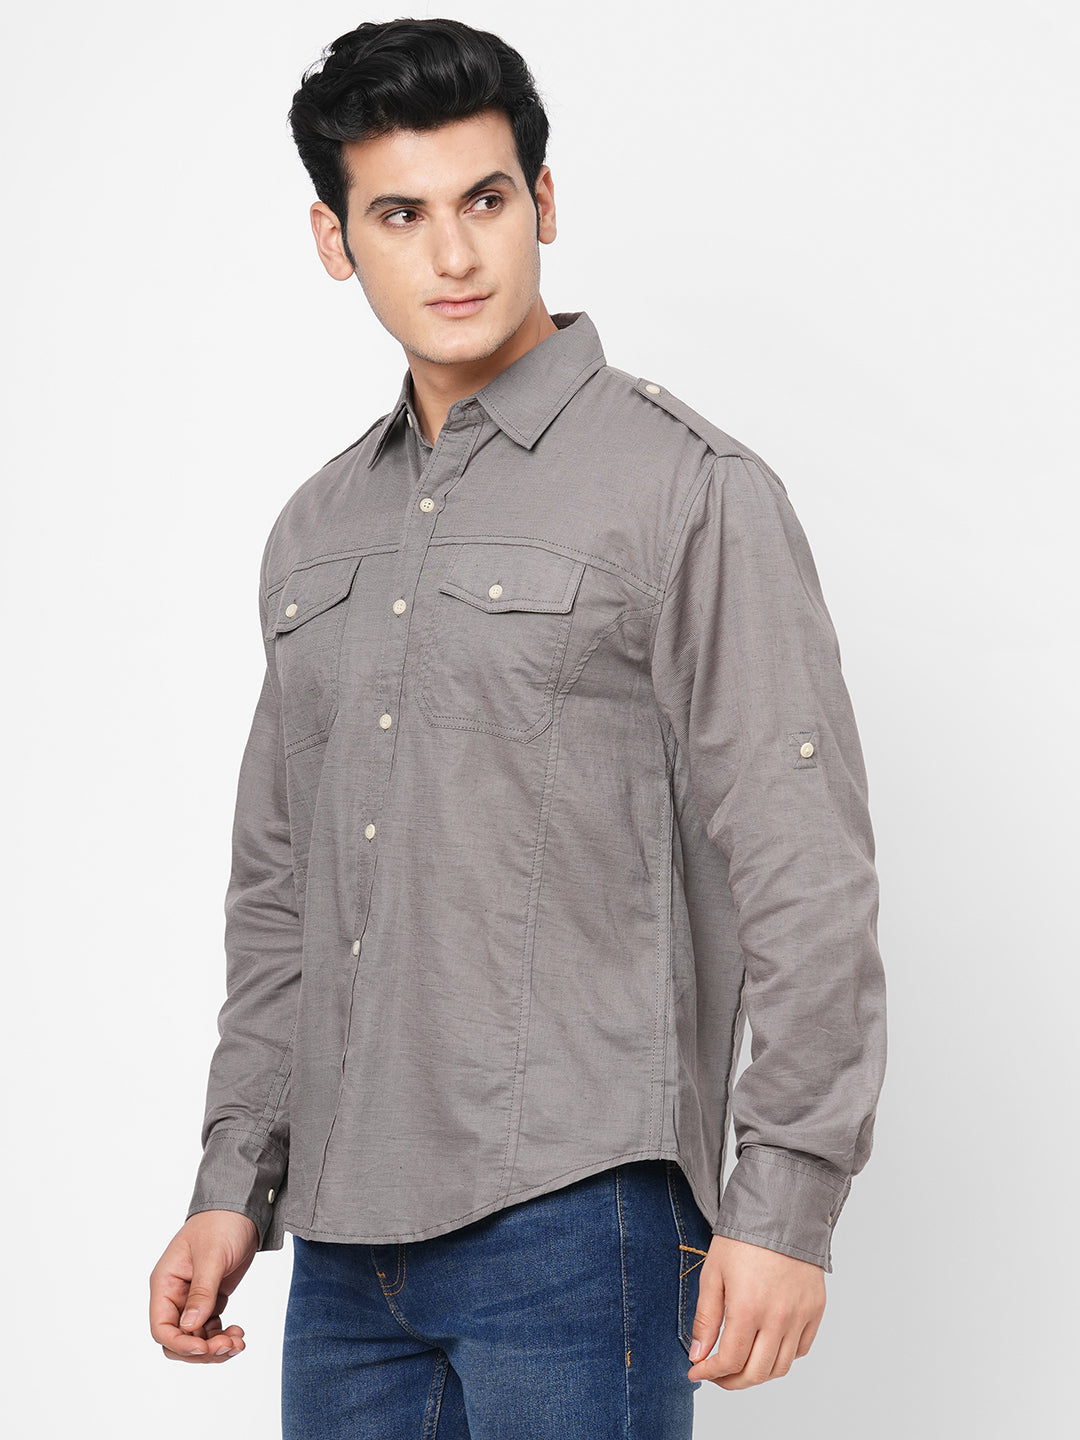 Men's Grey Linen Cotton Regular Fit Shirt